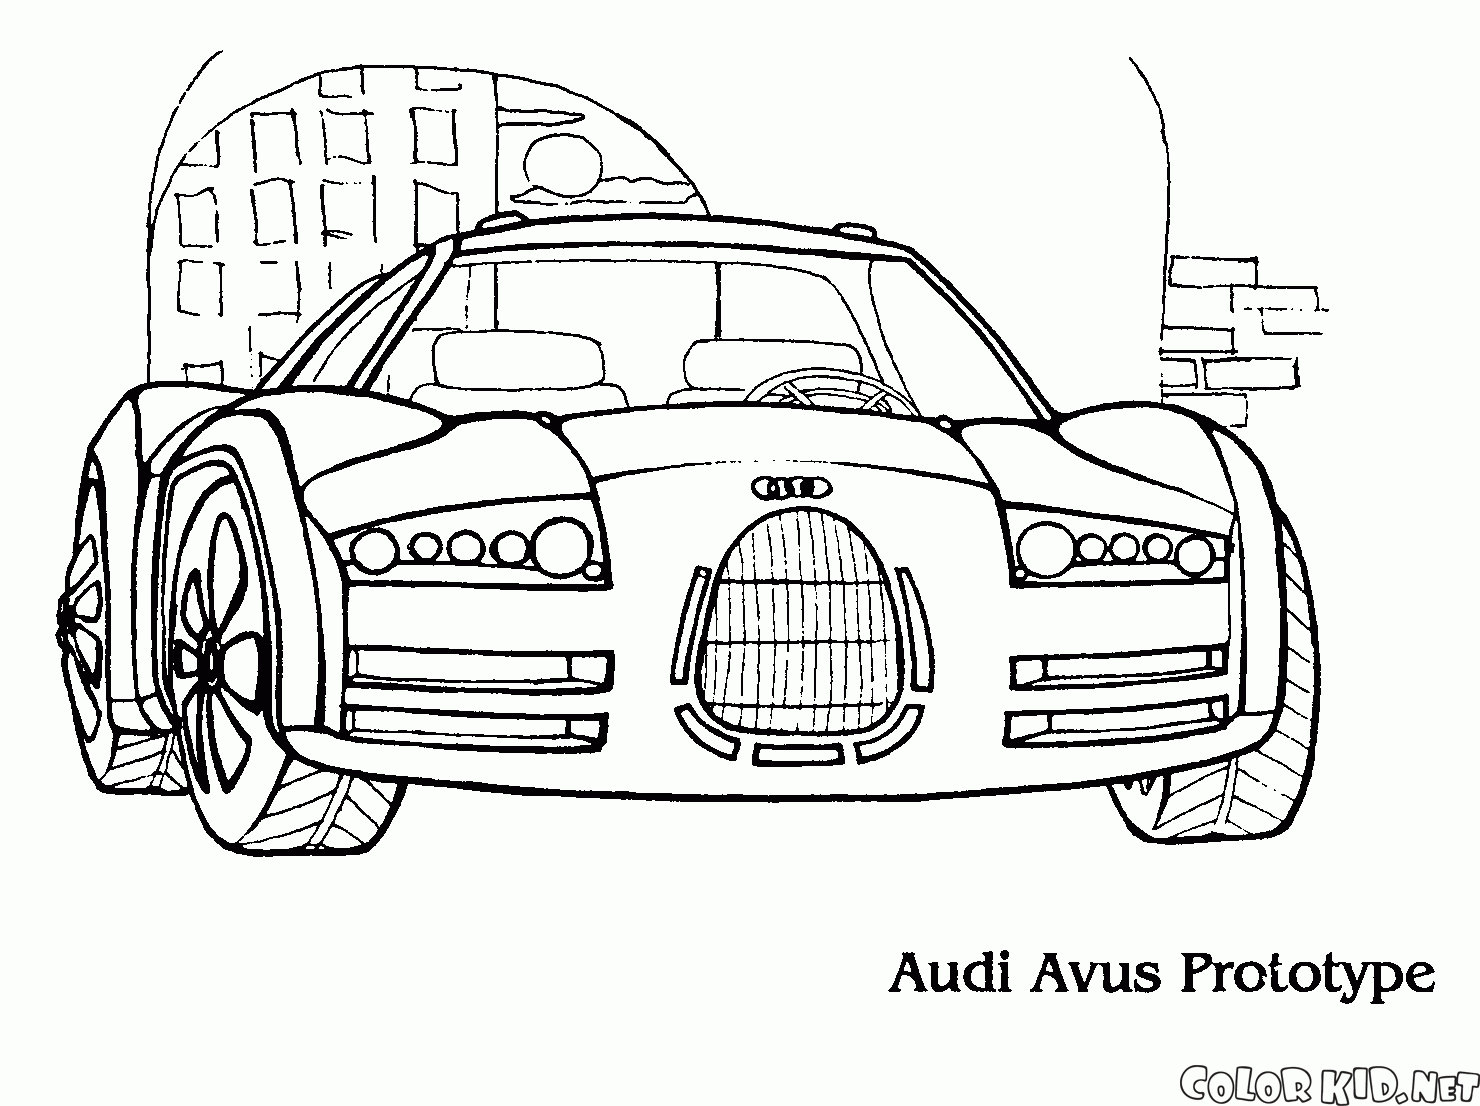 Il nuovo prototipo Audi